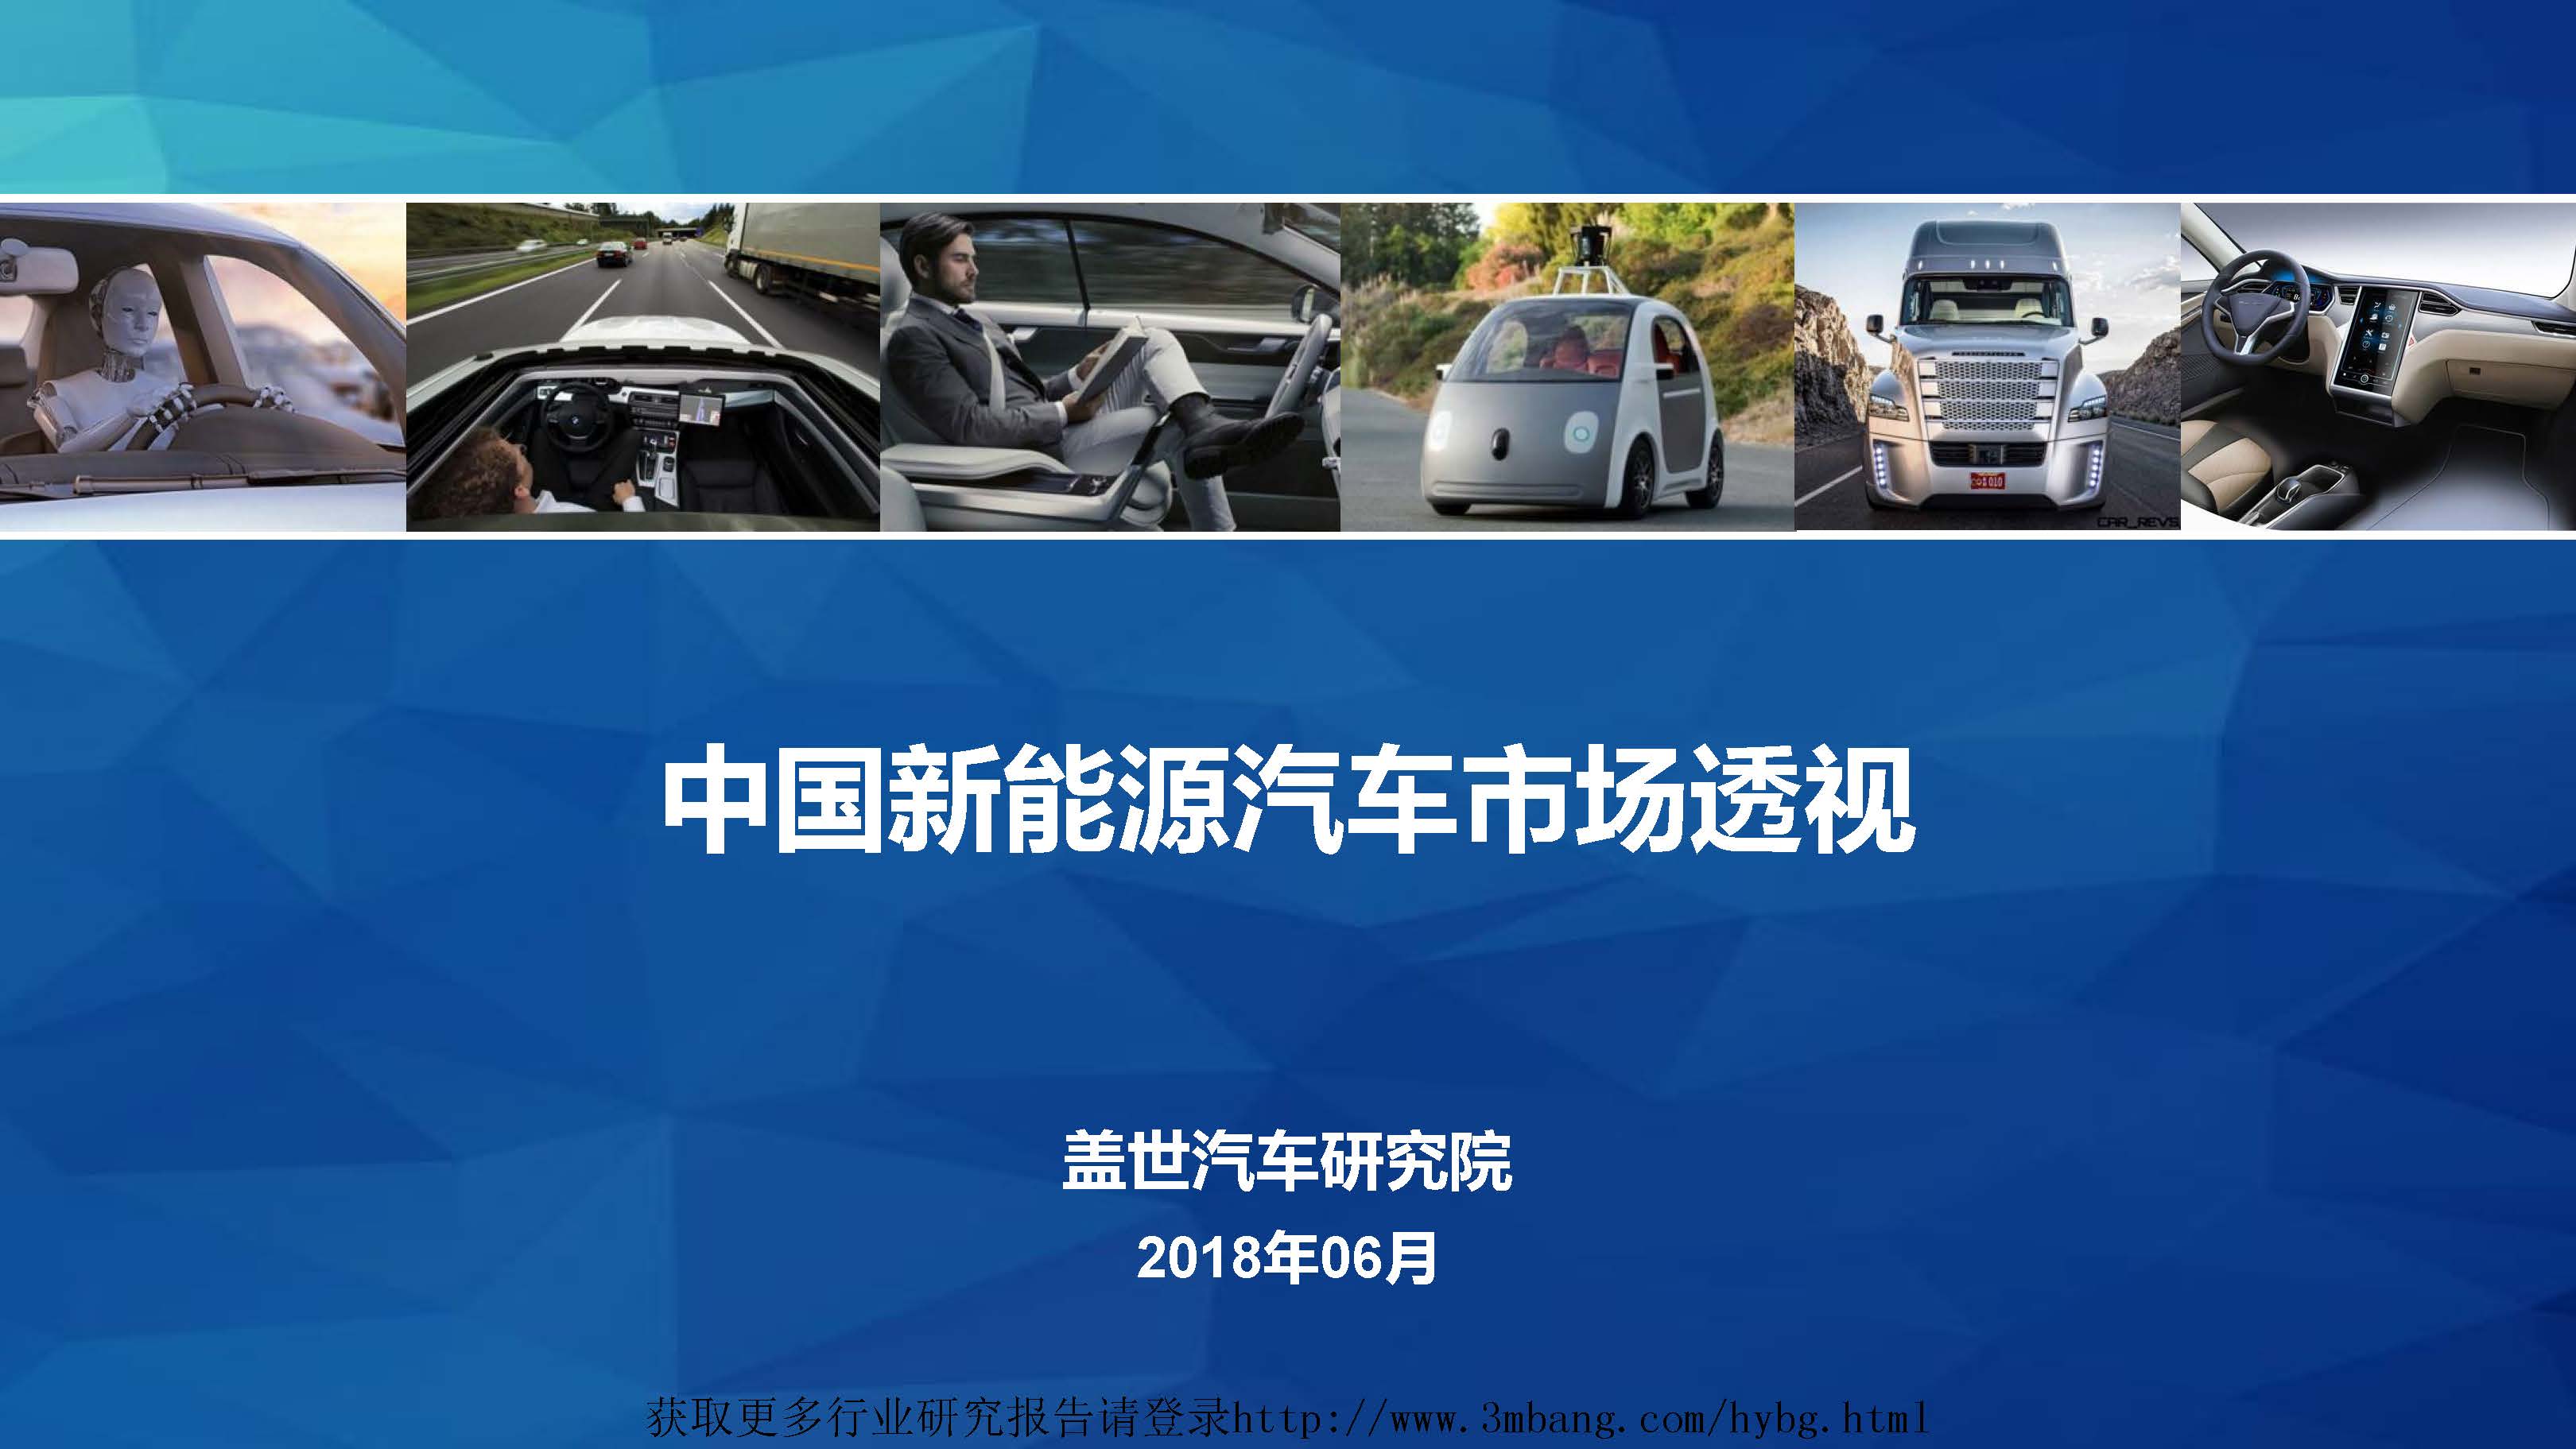 盖世汽车研究院：中国新能源汽车市场透视(附下载地址)